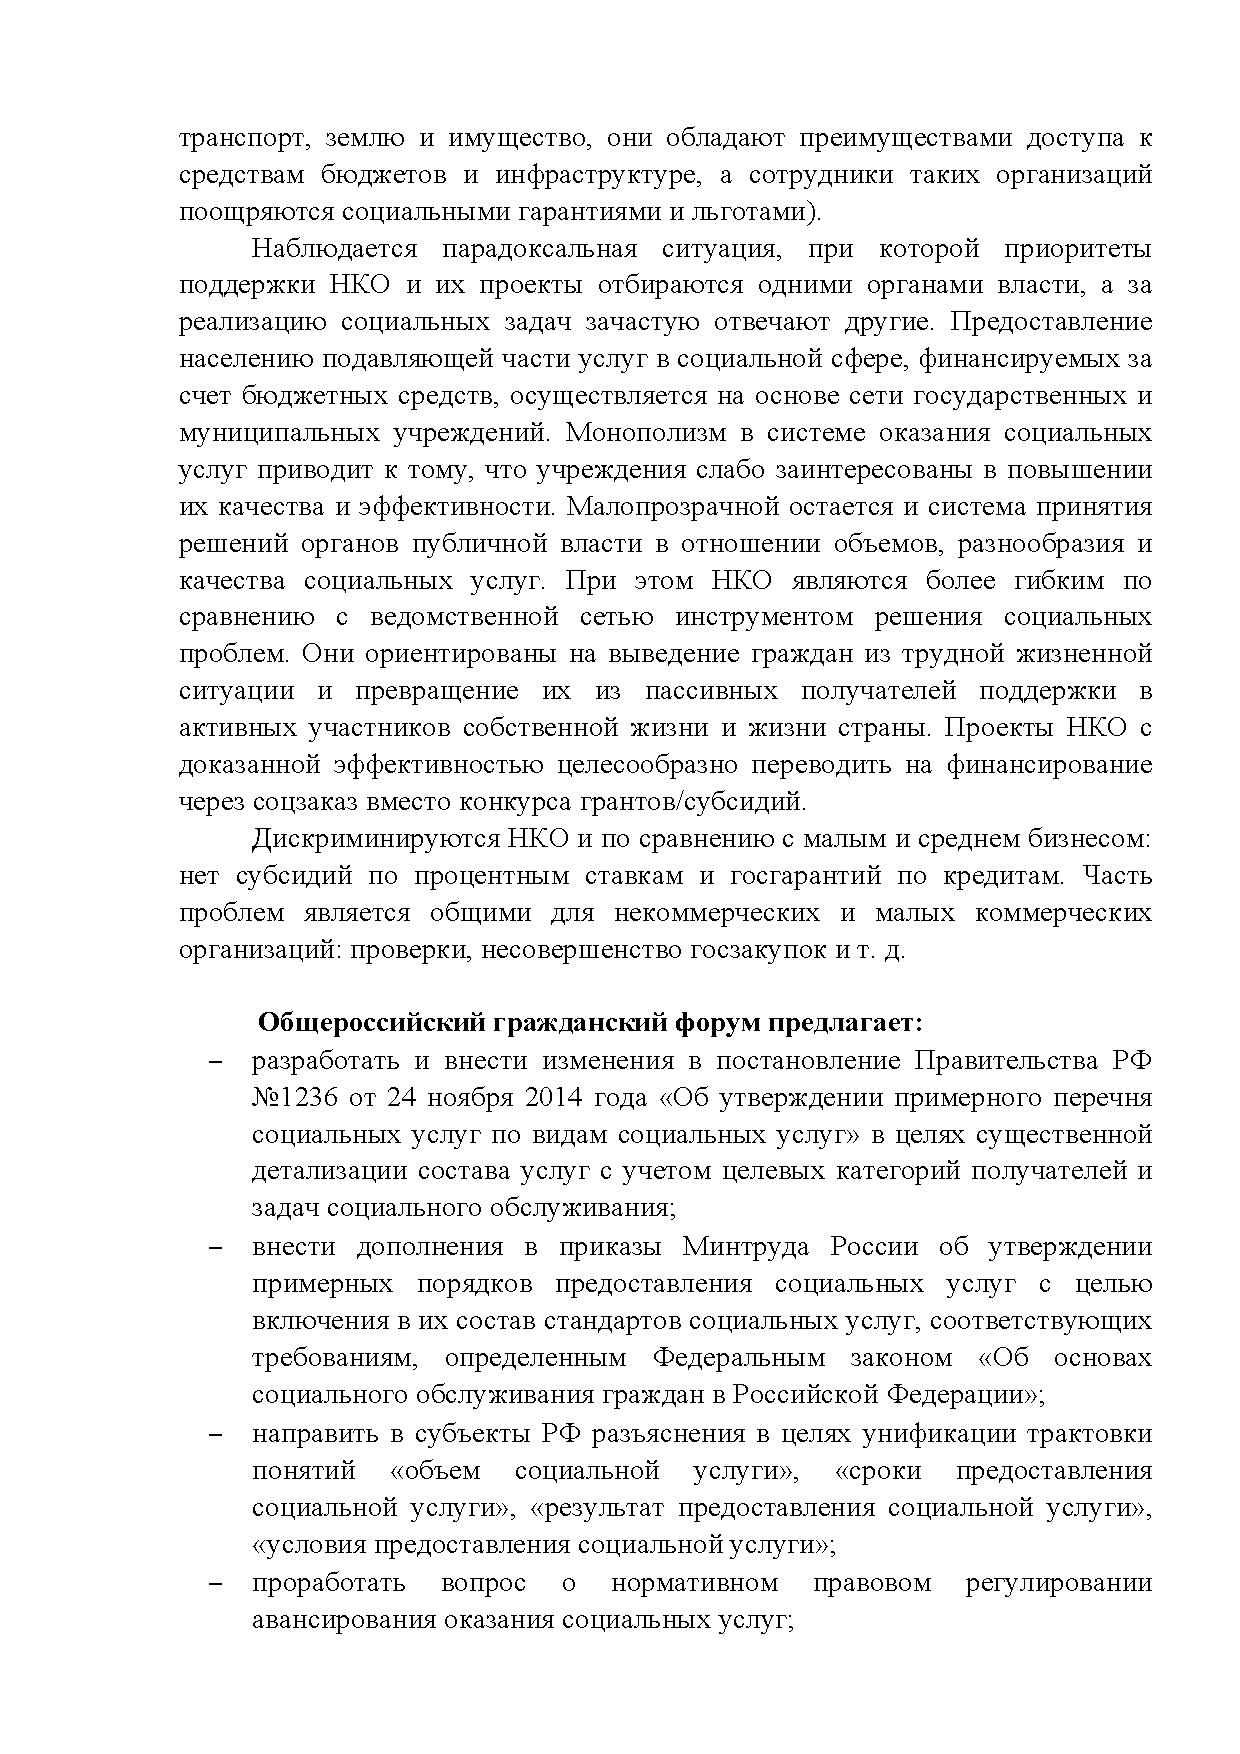  Опубликованы Предложения Общероссийского гражданского форума 2015 - фото 6